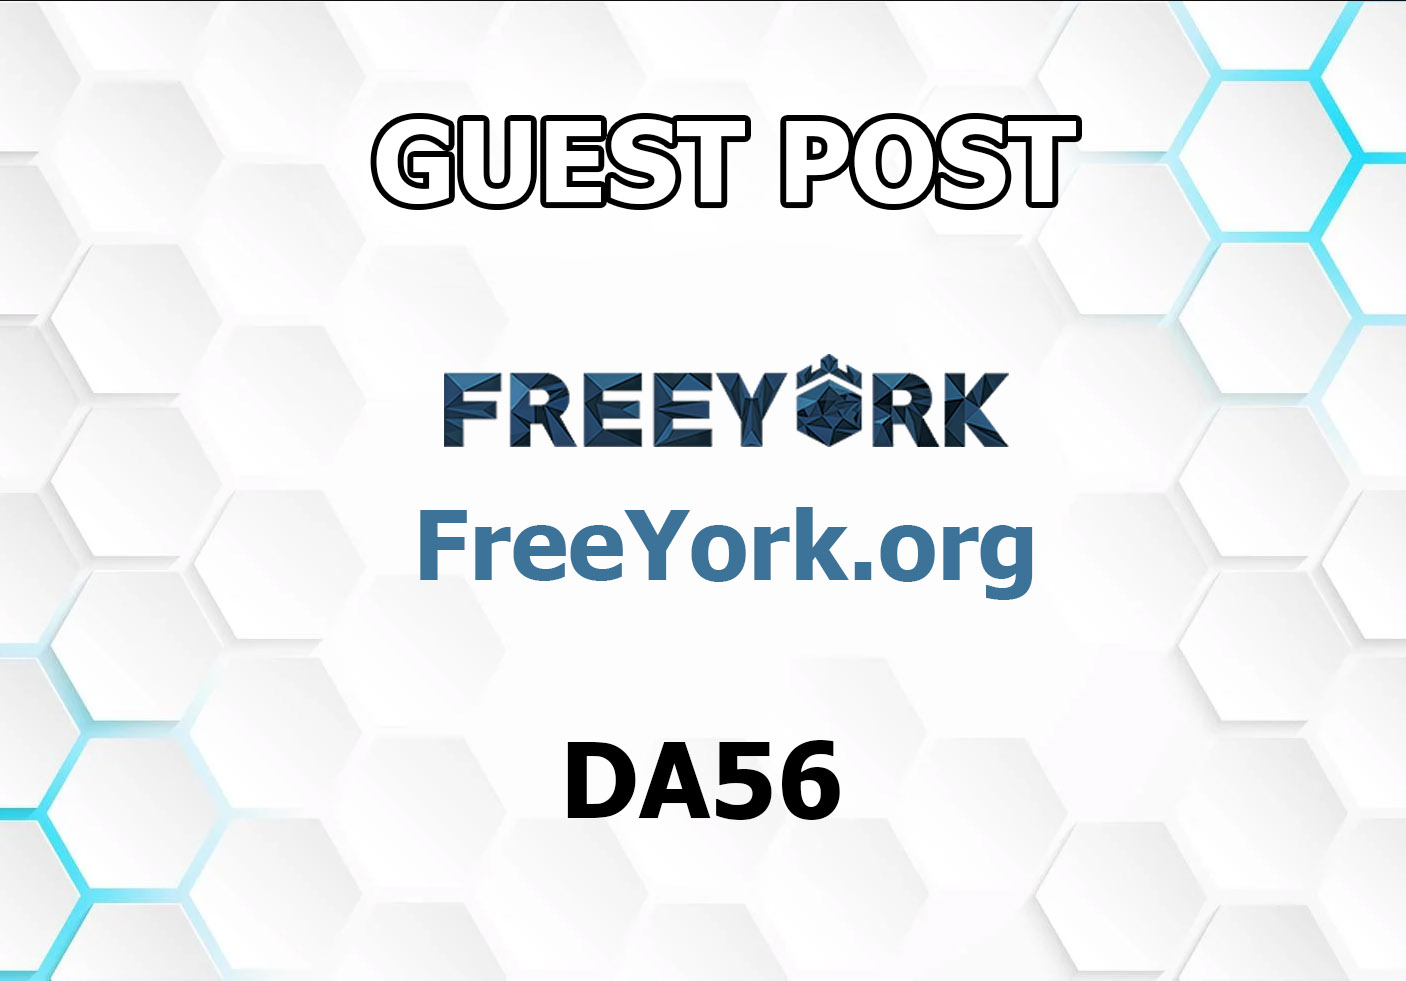 Guest post on lifestyle blog FreeYork DA56 Freeyork.org